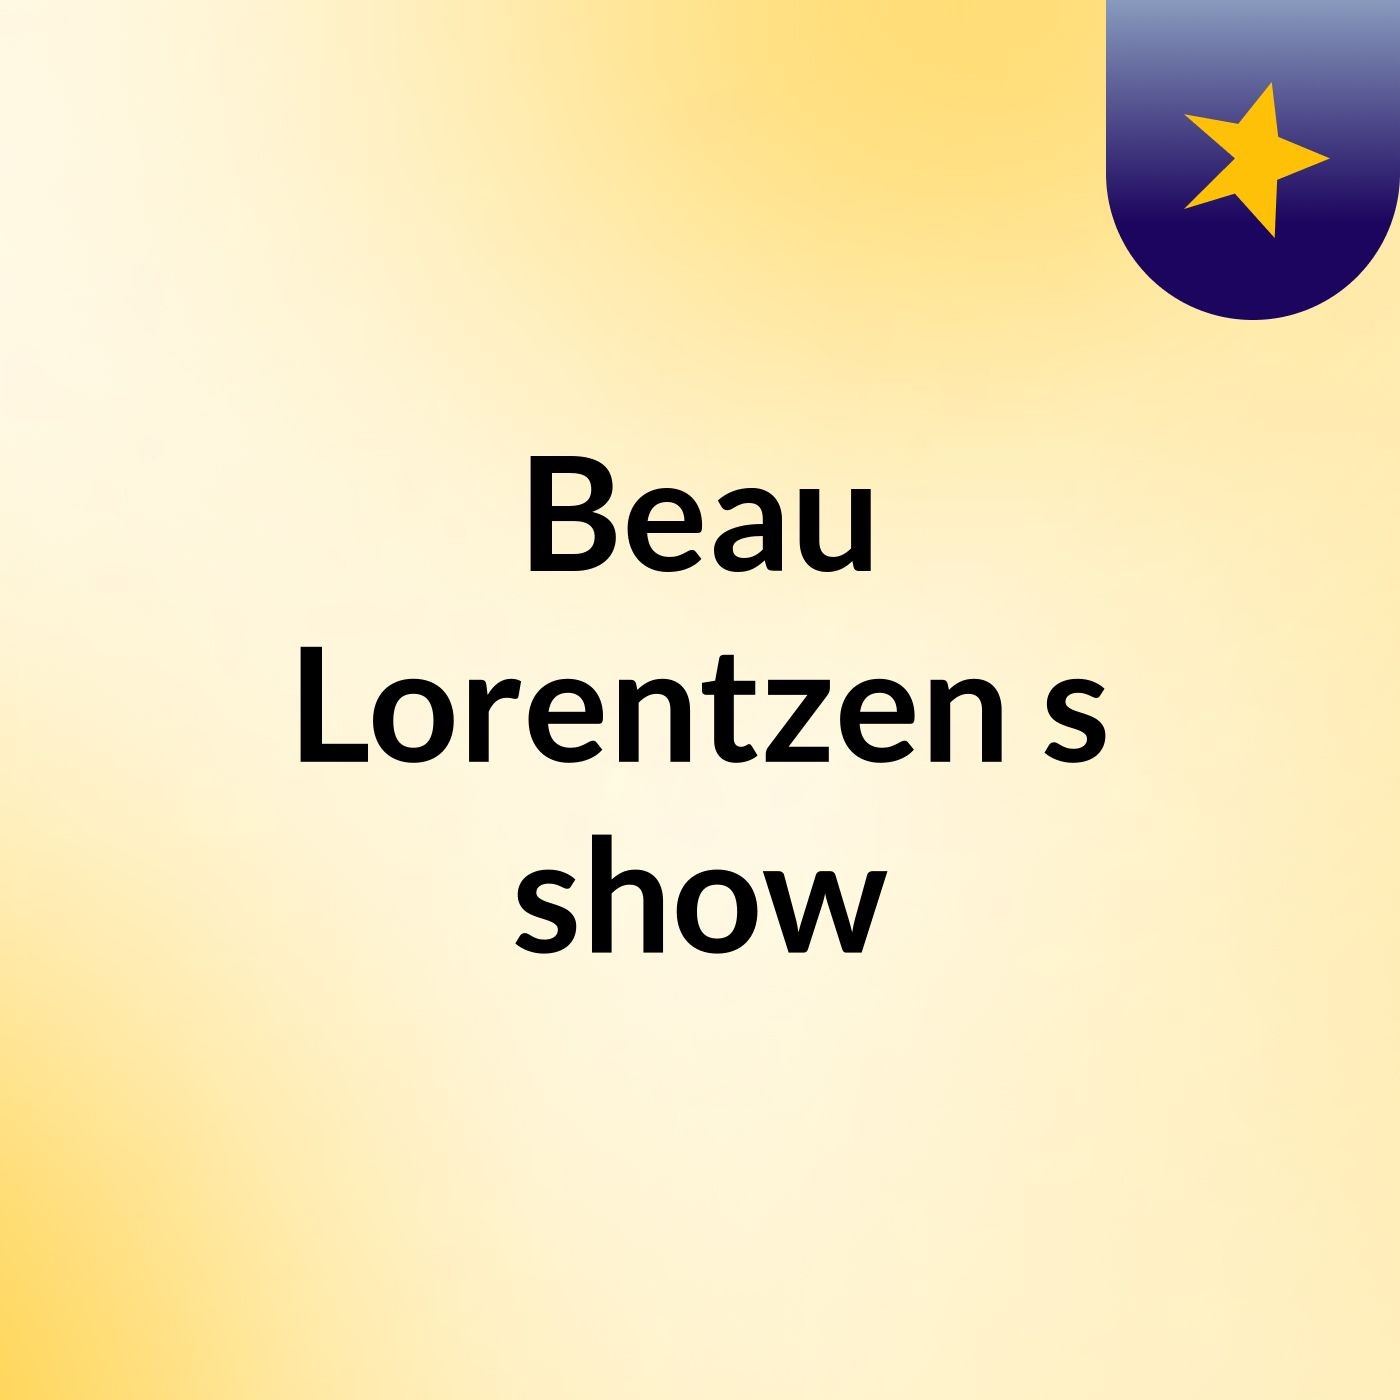 Beau Lorentzen's show